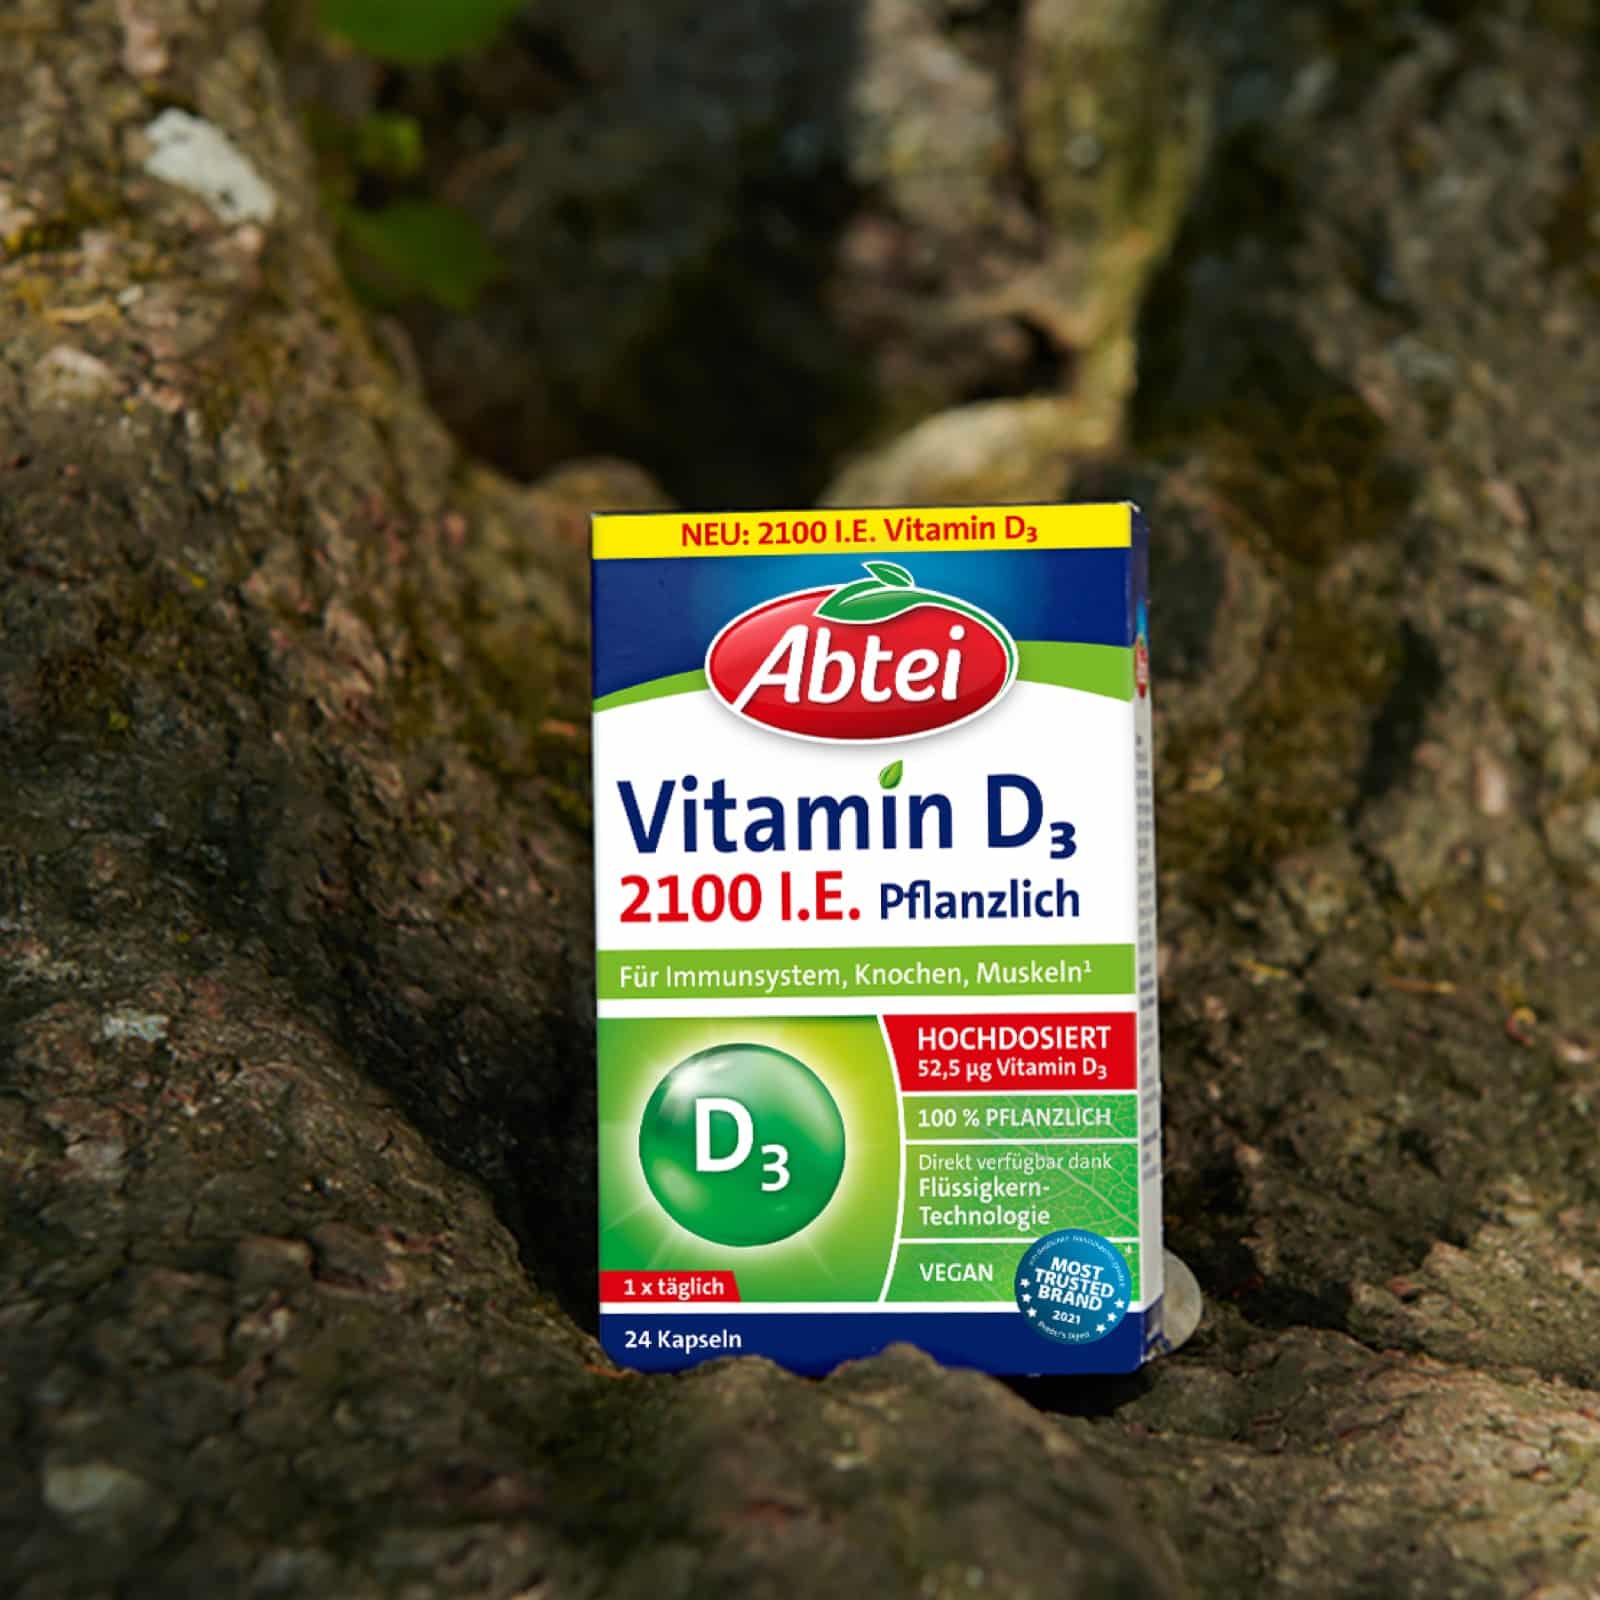 Abtei Produkt Bild Vitamin D3 mit Baumrinde im Hintergrund